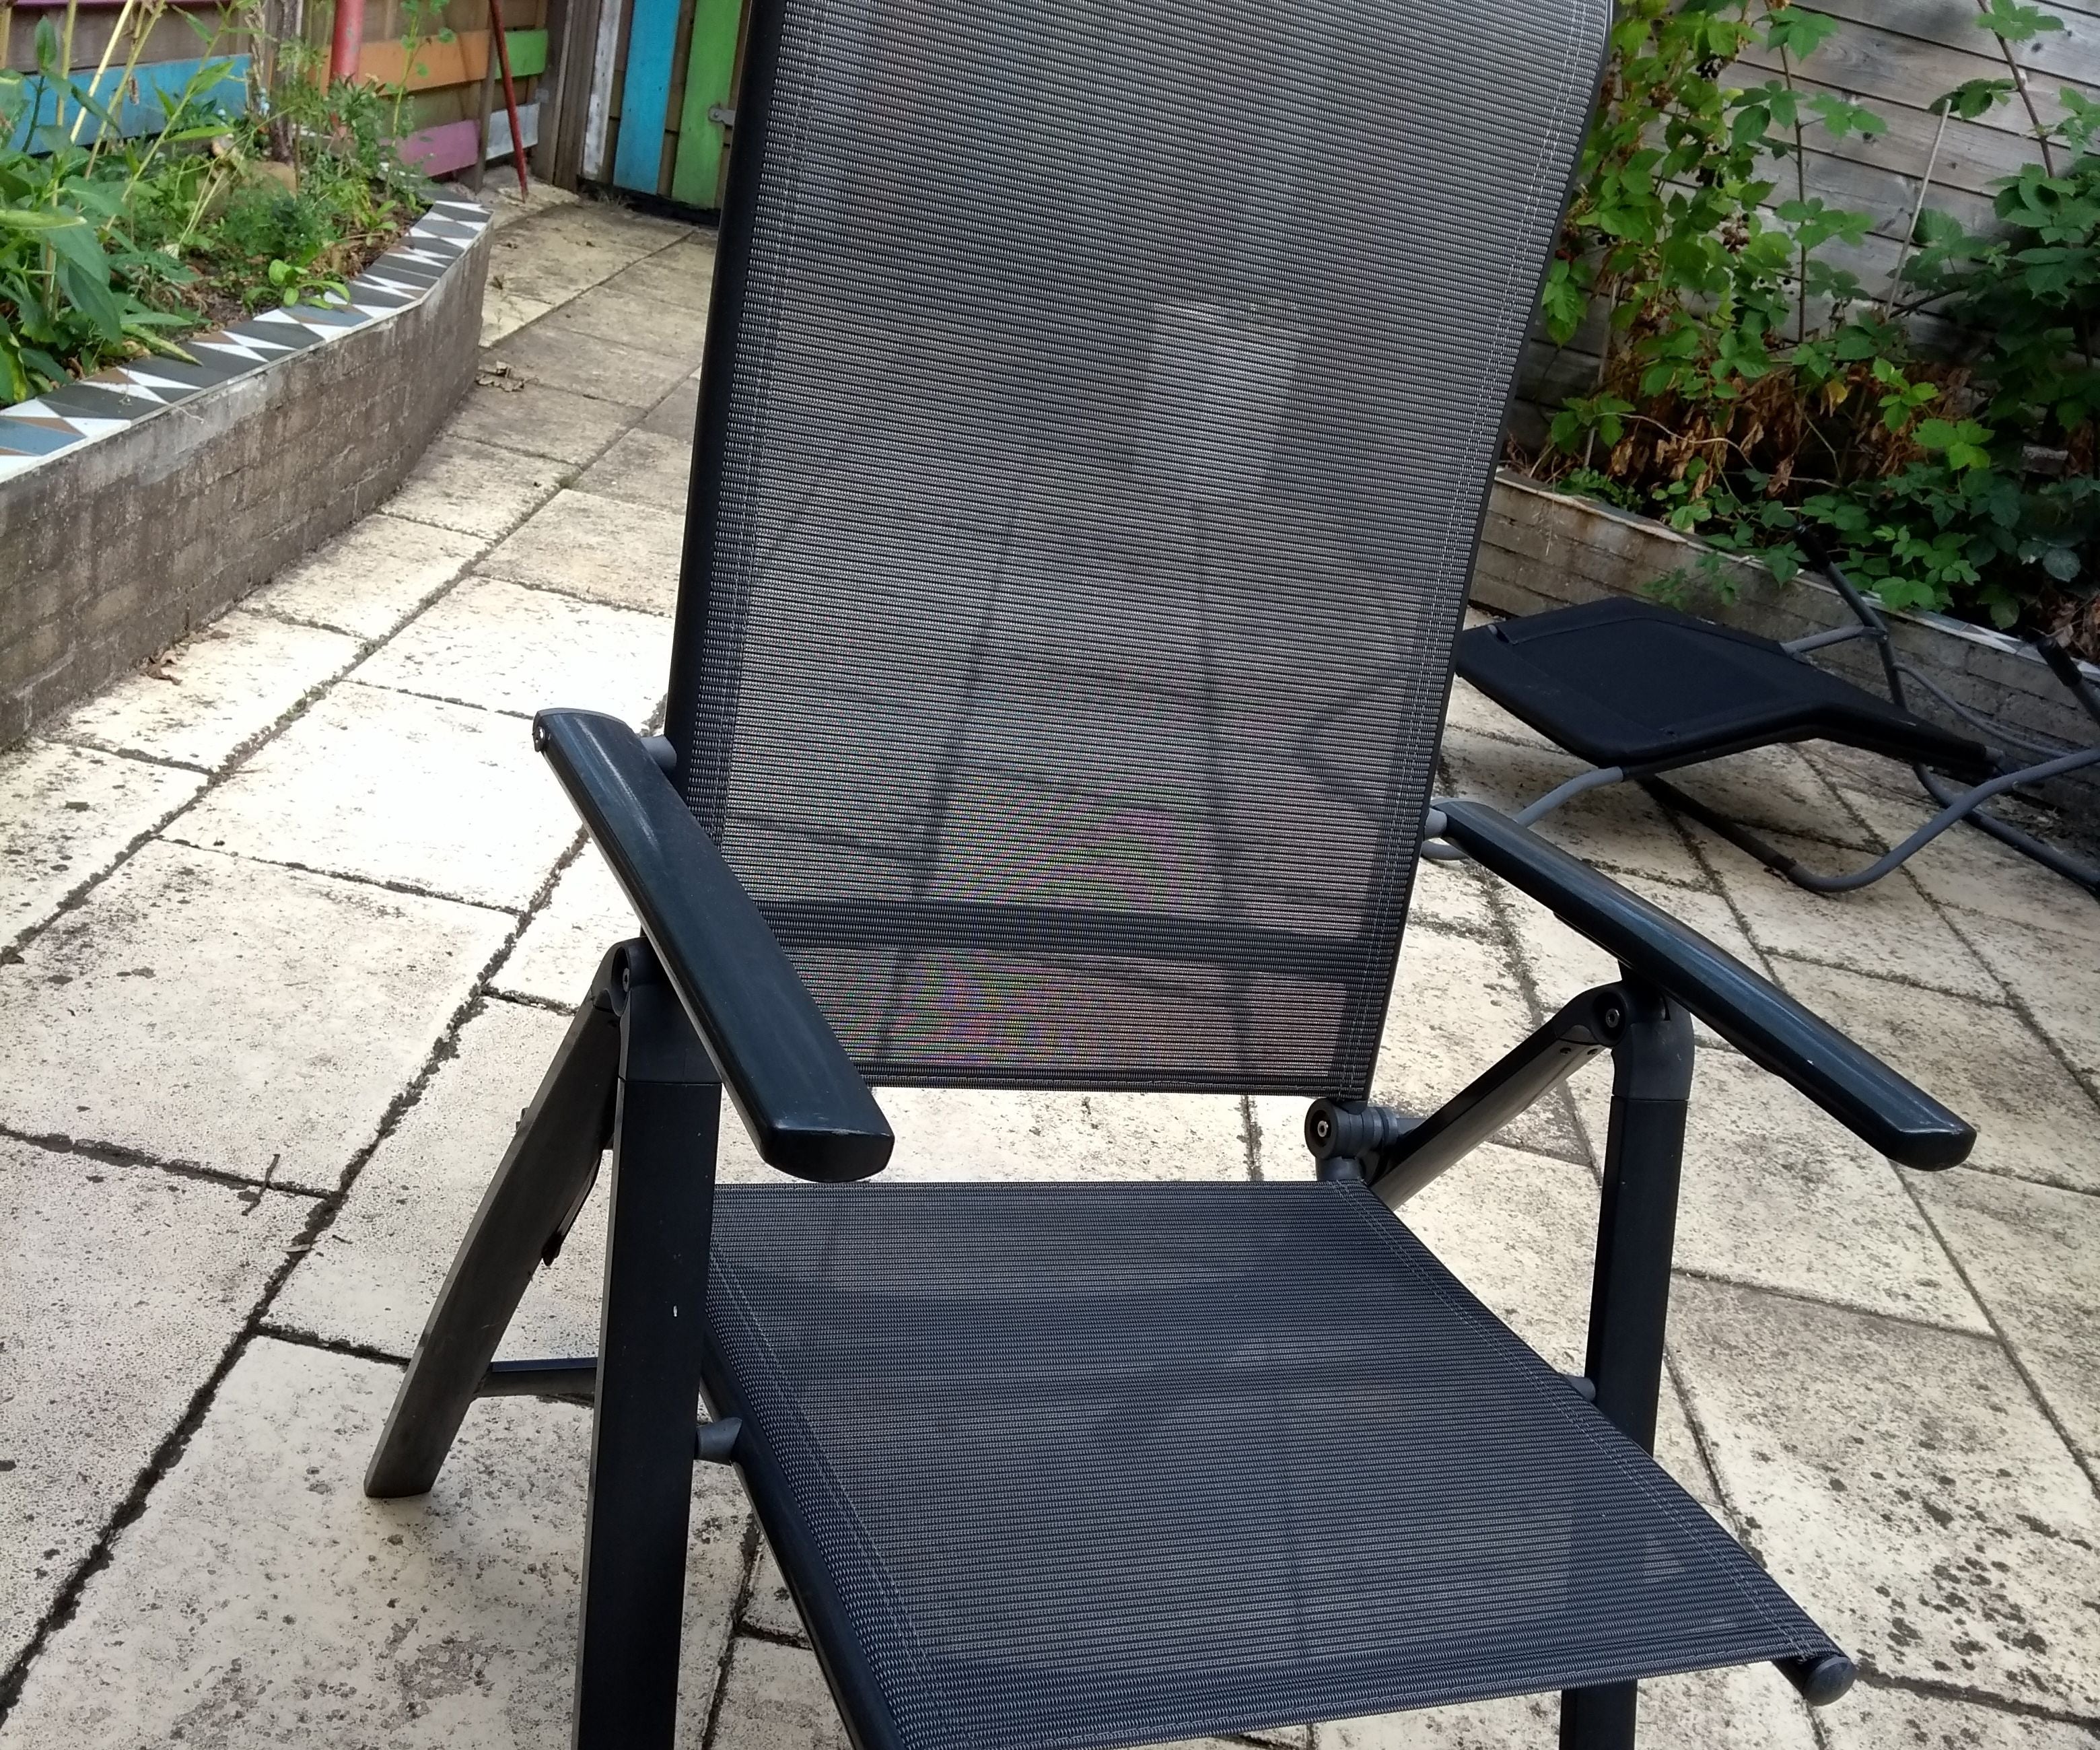 Fix a Broken Garden Chair for Free